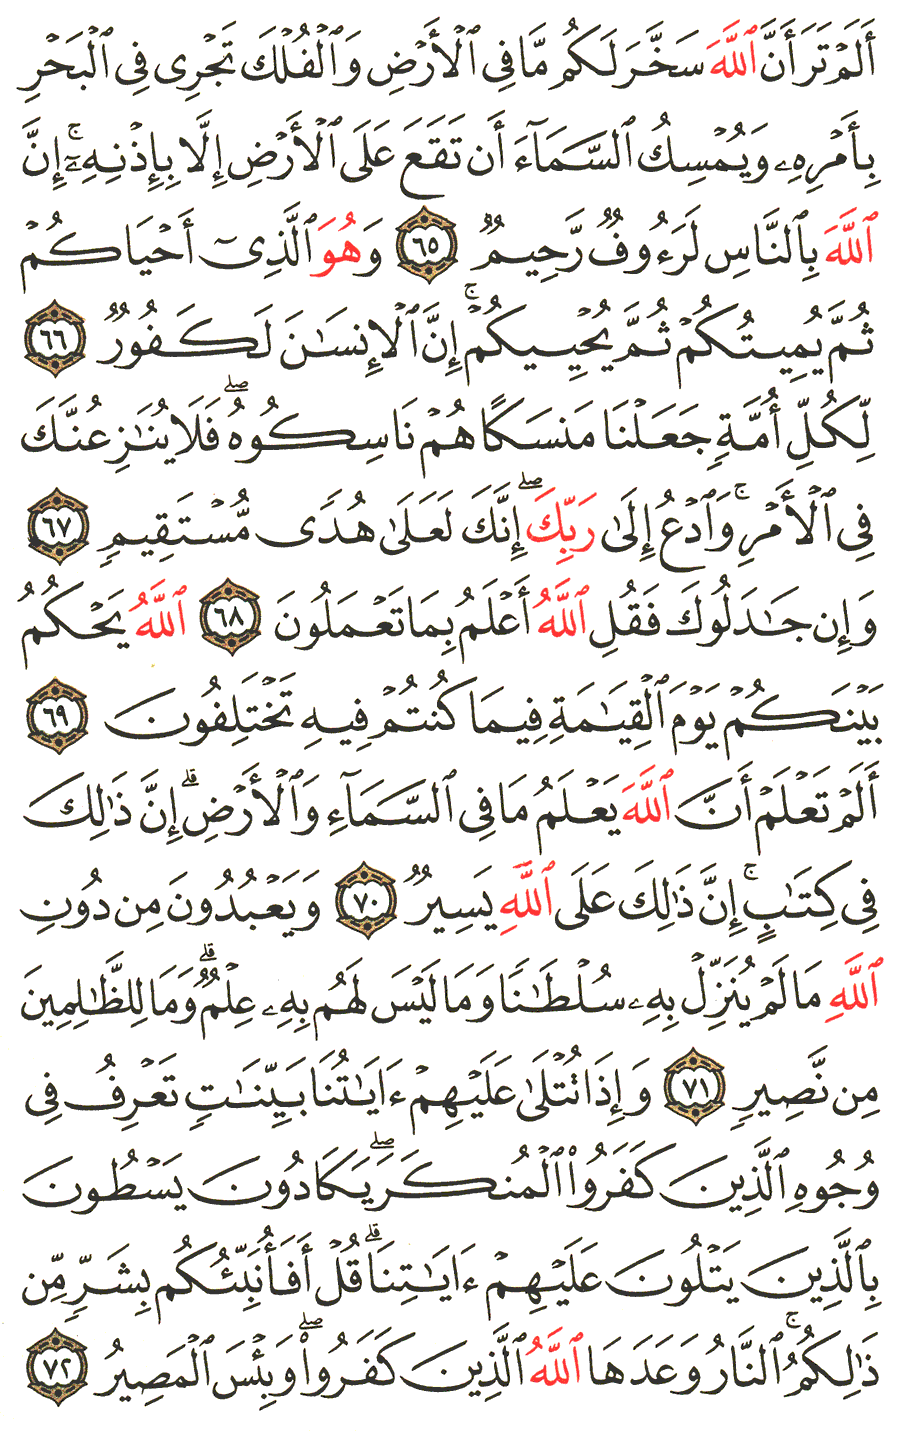 الصفحة رقم 340  من القرآن الكريم مكتوبة من المصحف